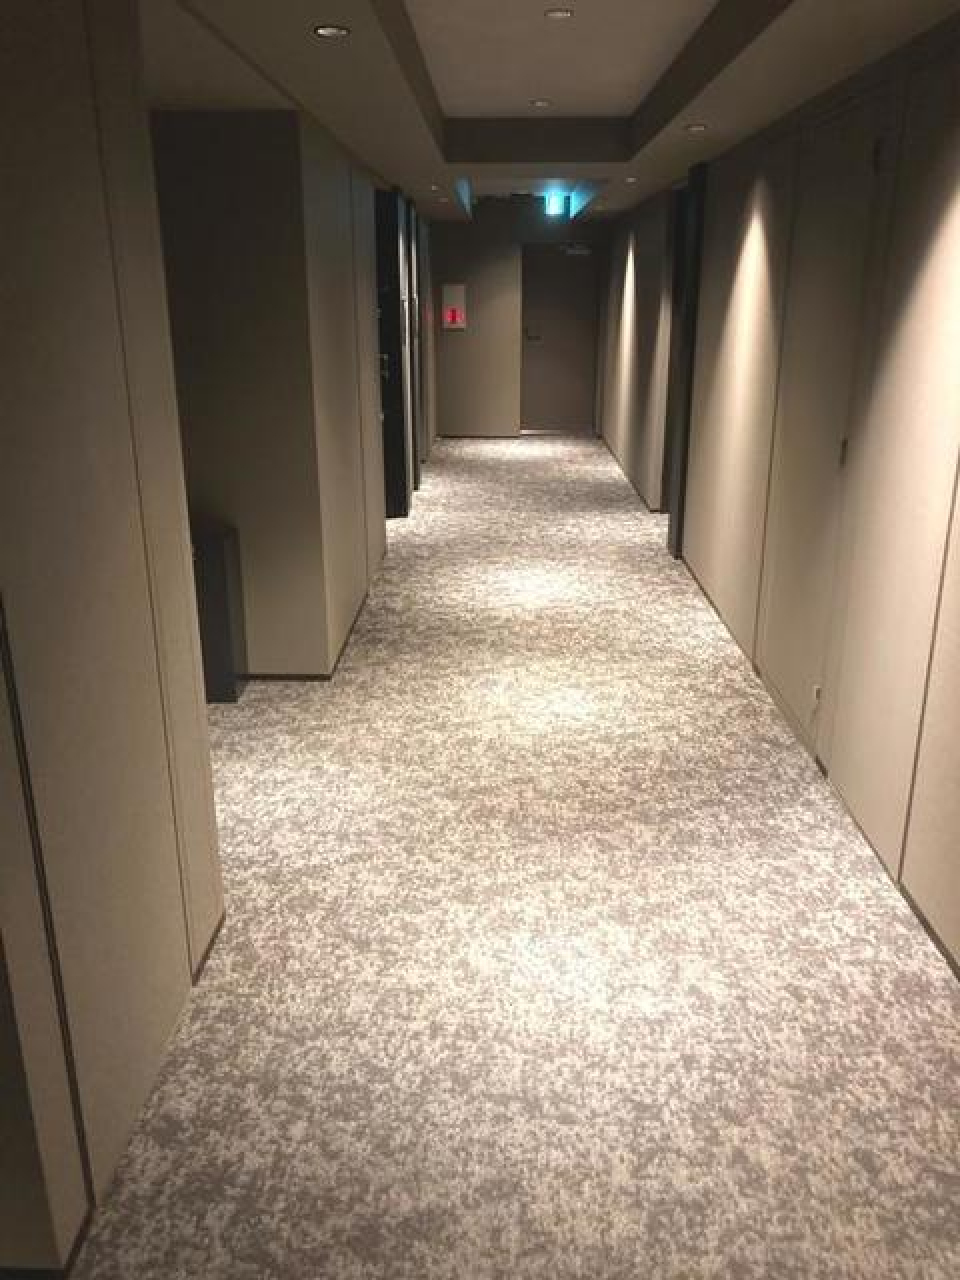 ホテルのような廊下を抜ける
